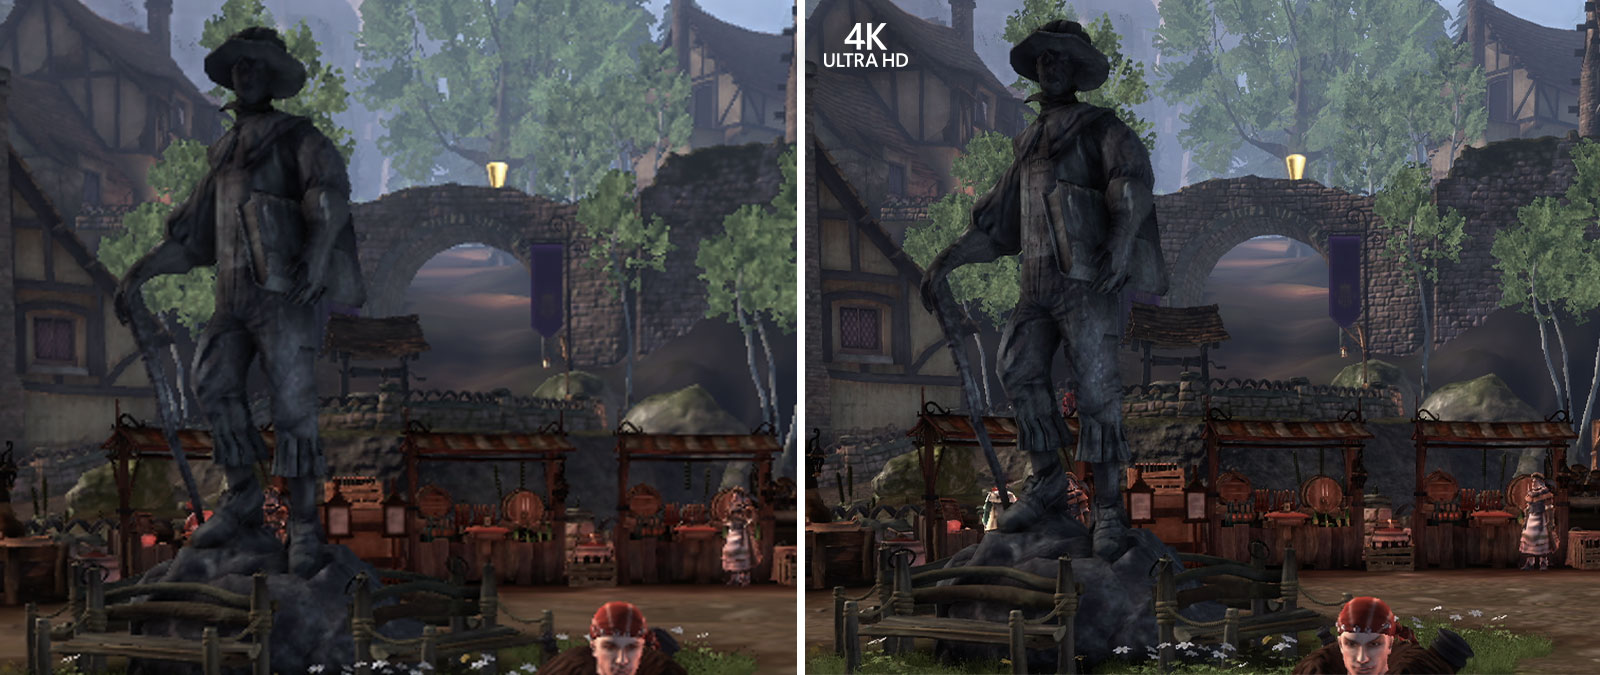 4K Ultra HD, vergelijkende screenshots van Fable Anniversary, ingezoomd om de achtergronddetails weer te geven